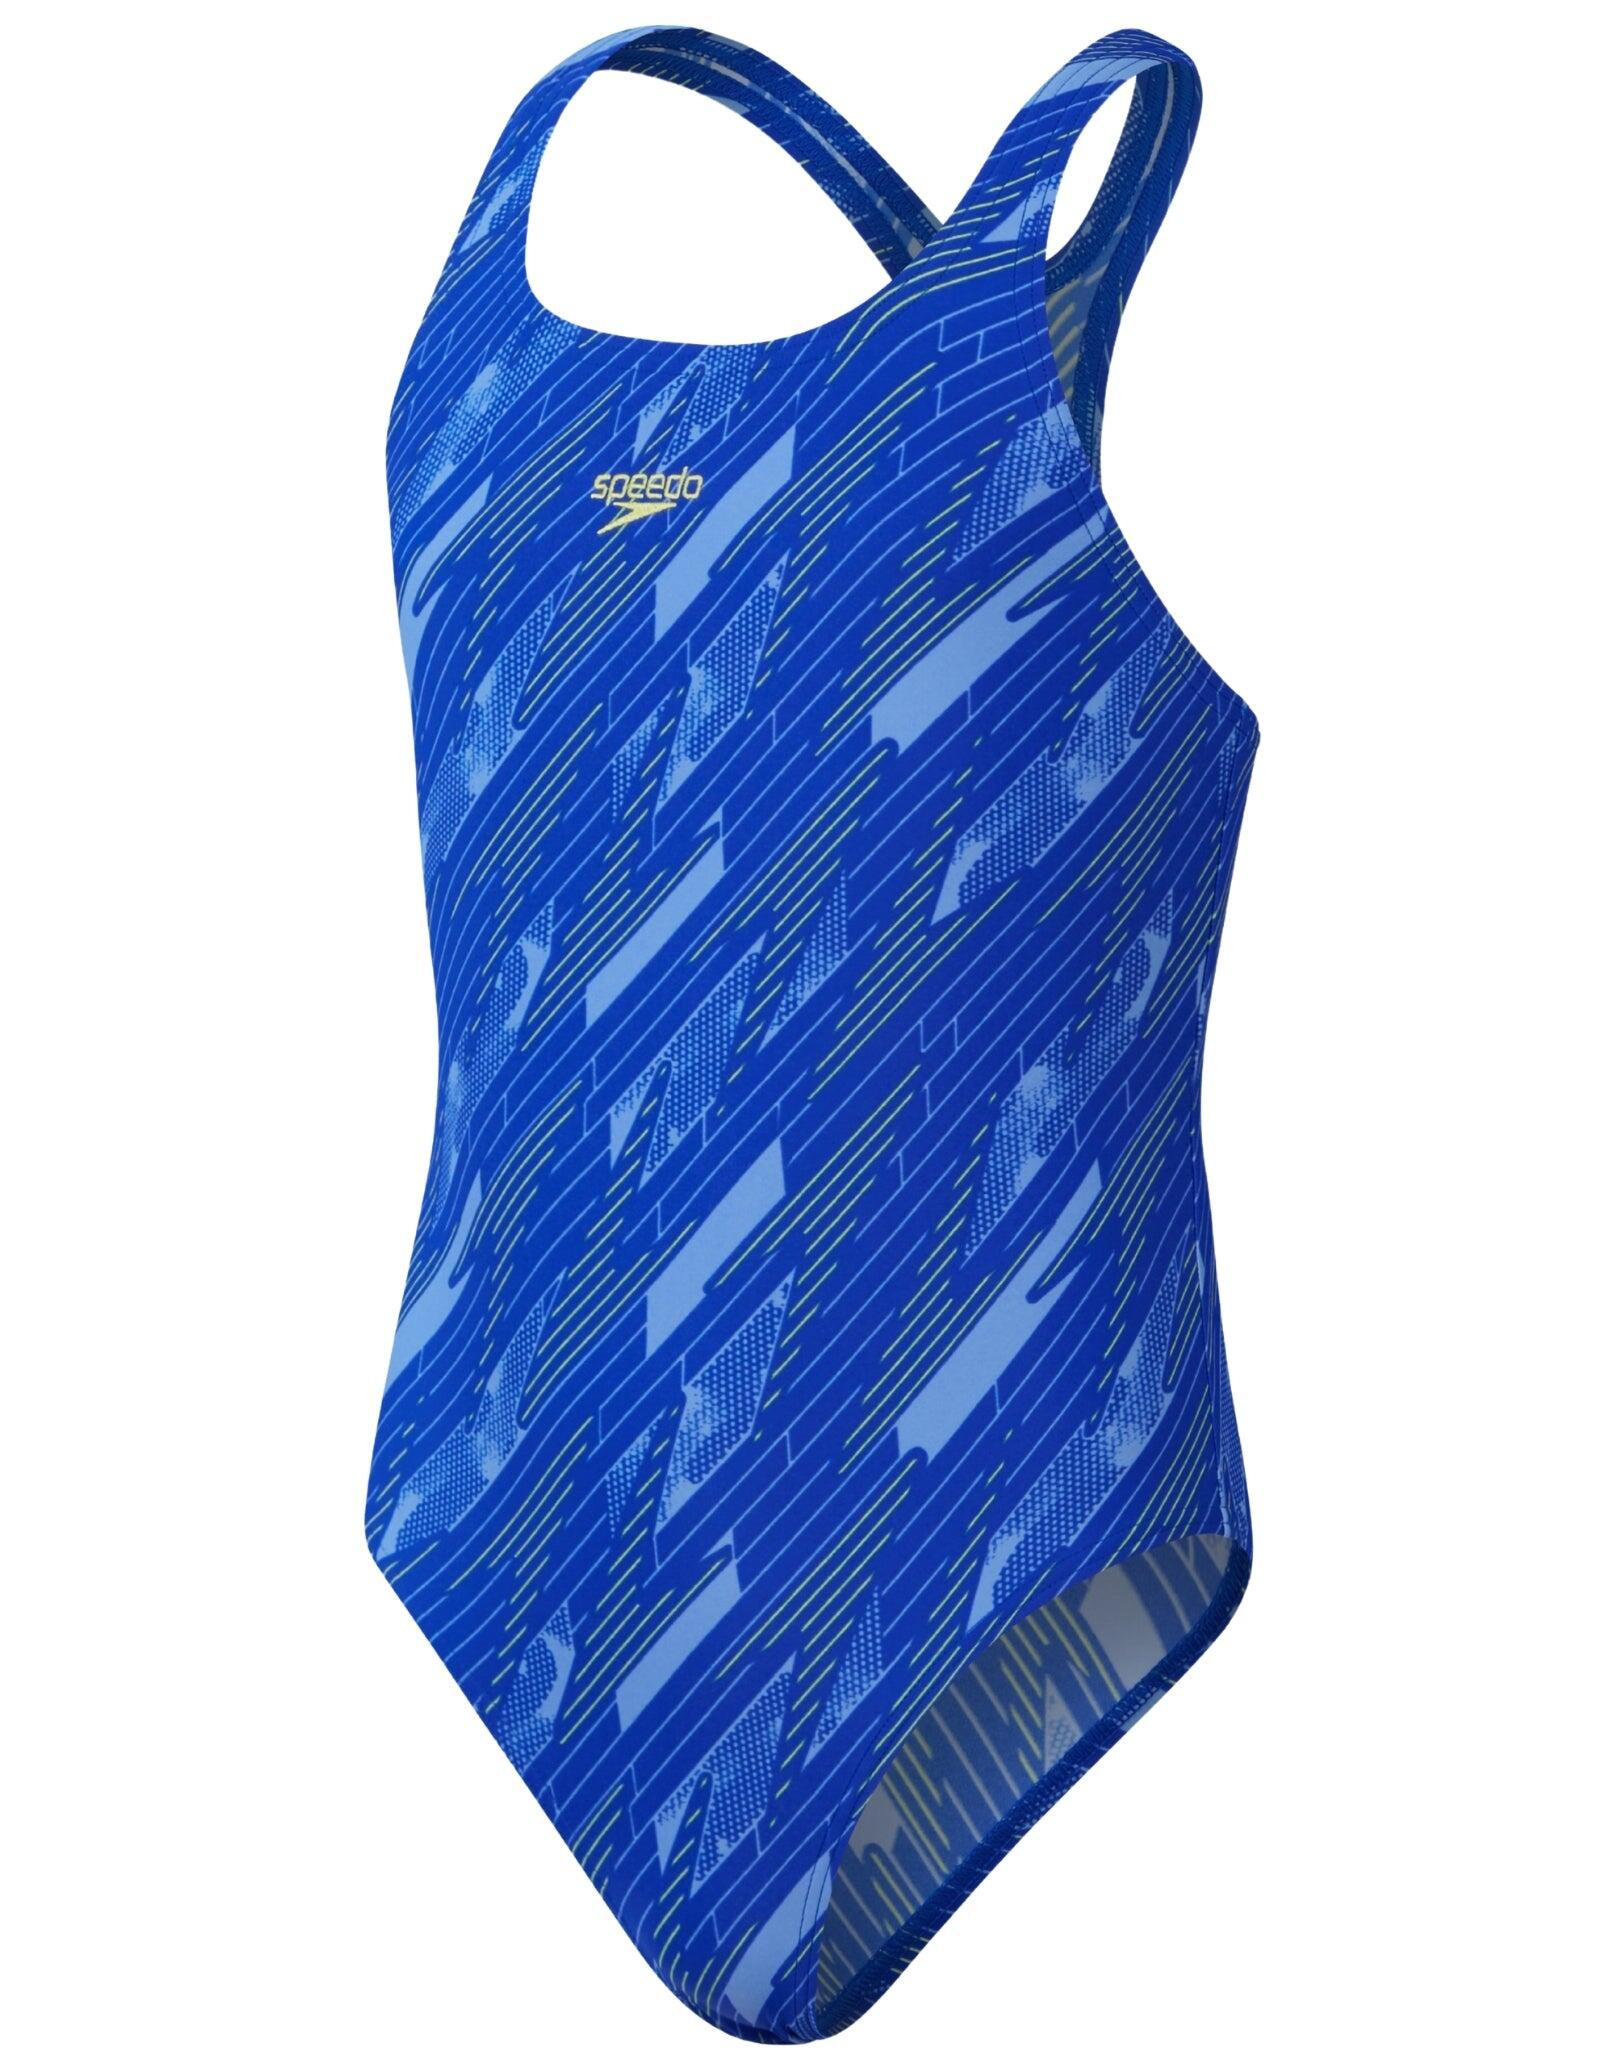 Speedo Girls Hyperboom Allover Medalist Swimsuit - Navy/Blue 1/5